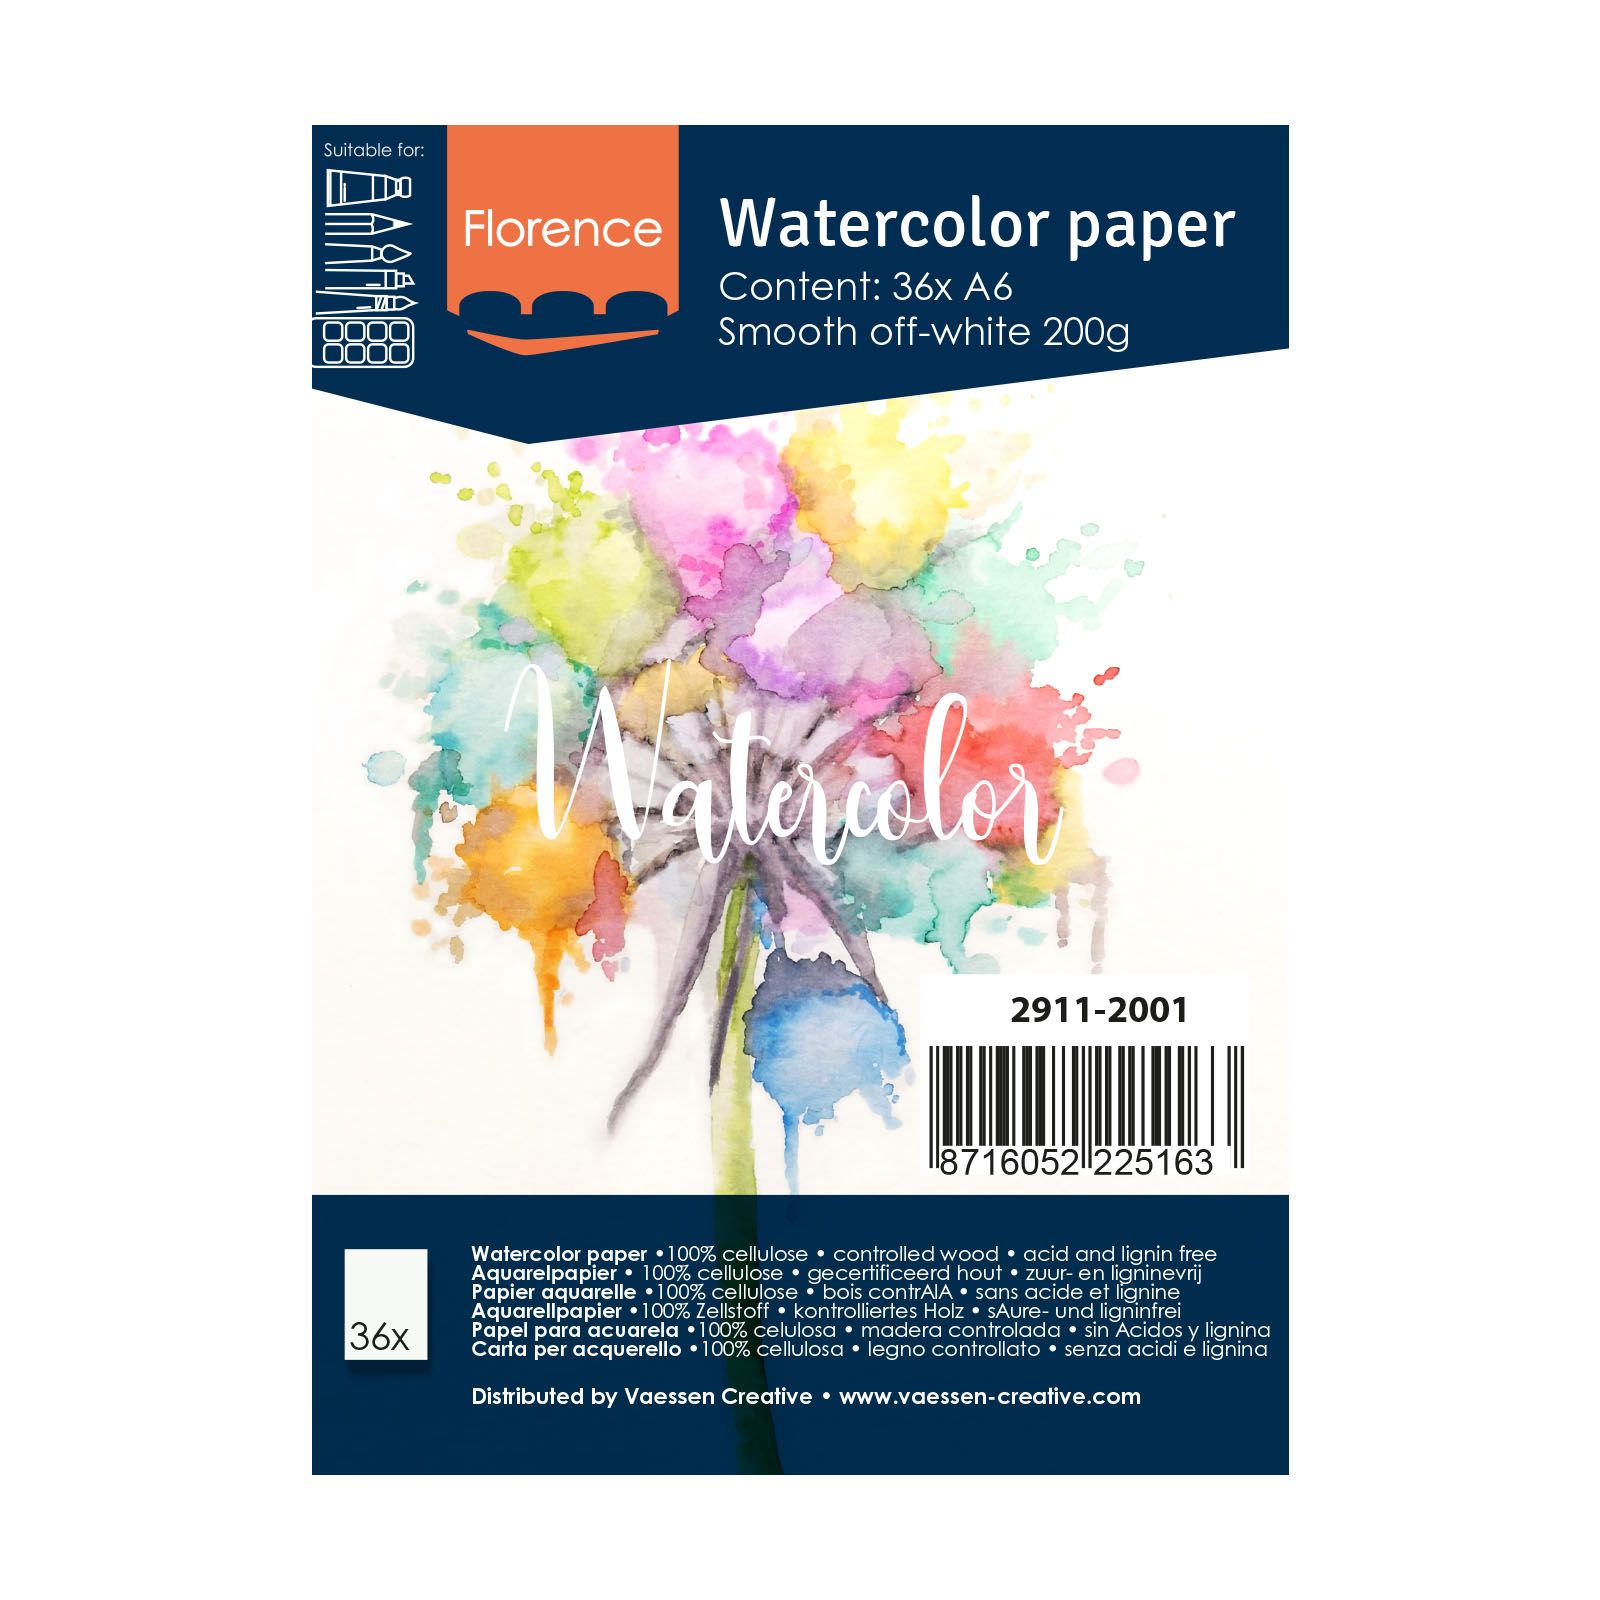 Florence • Aquarelpapier 300g Glad A6 200g Off-White 36x